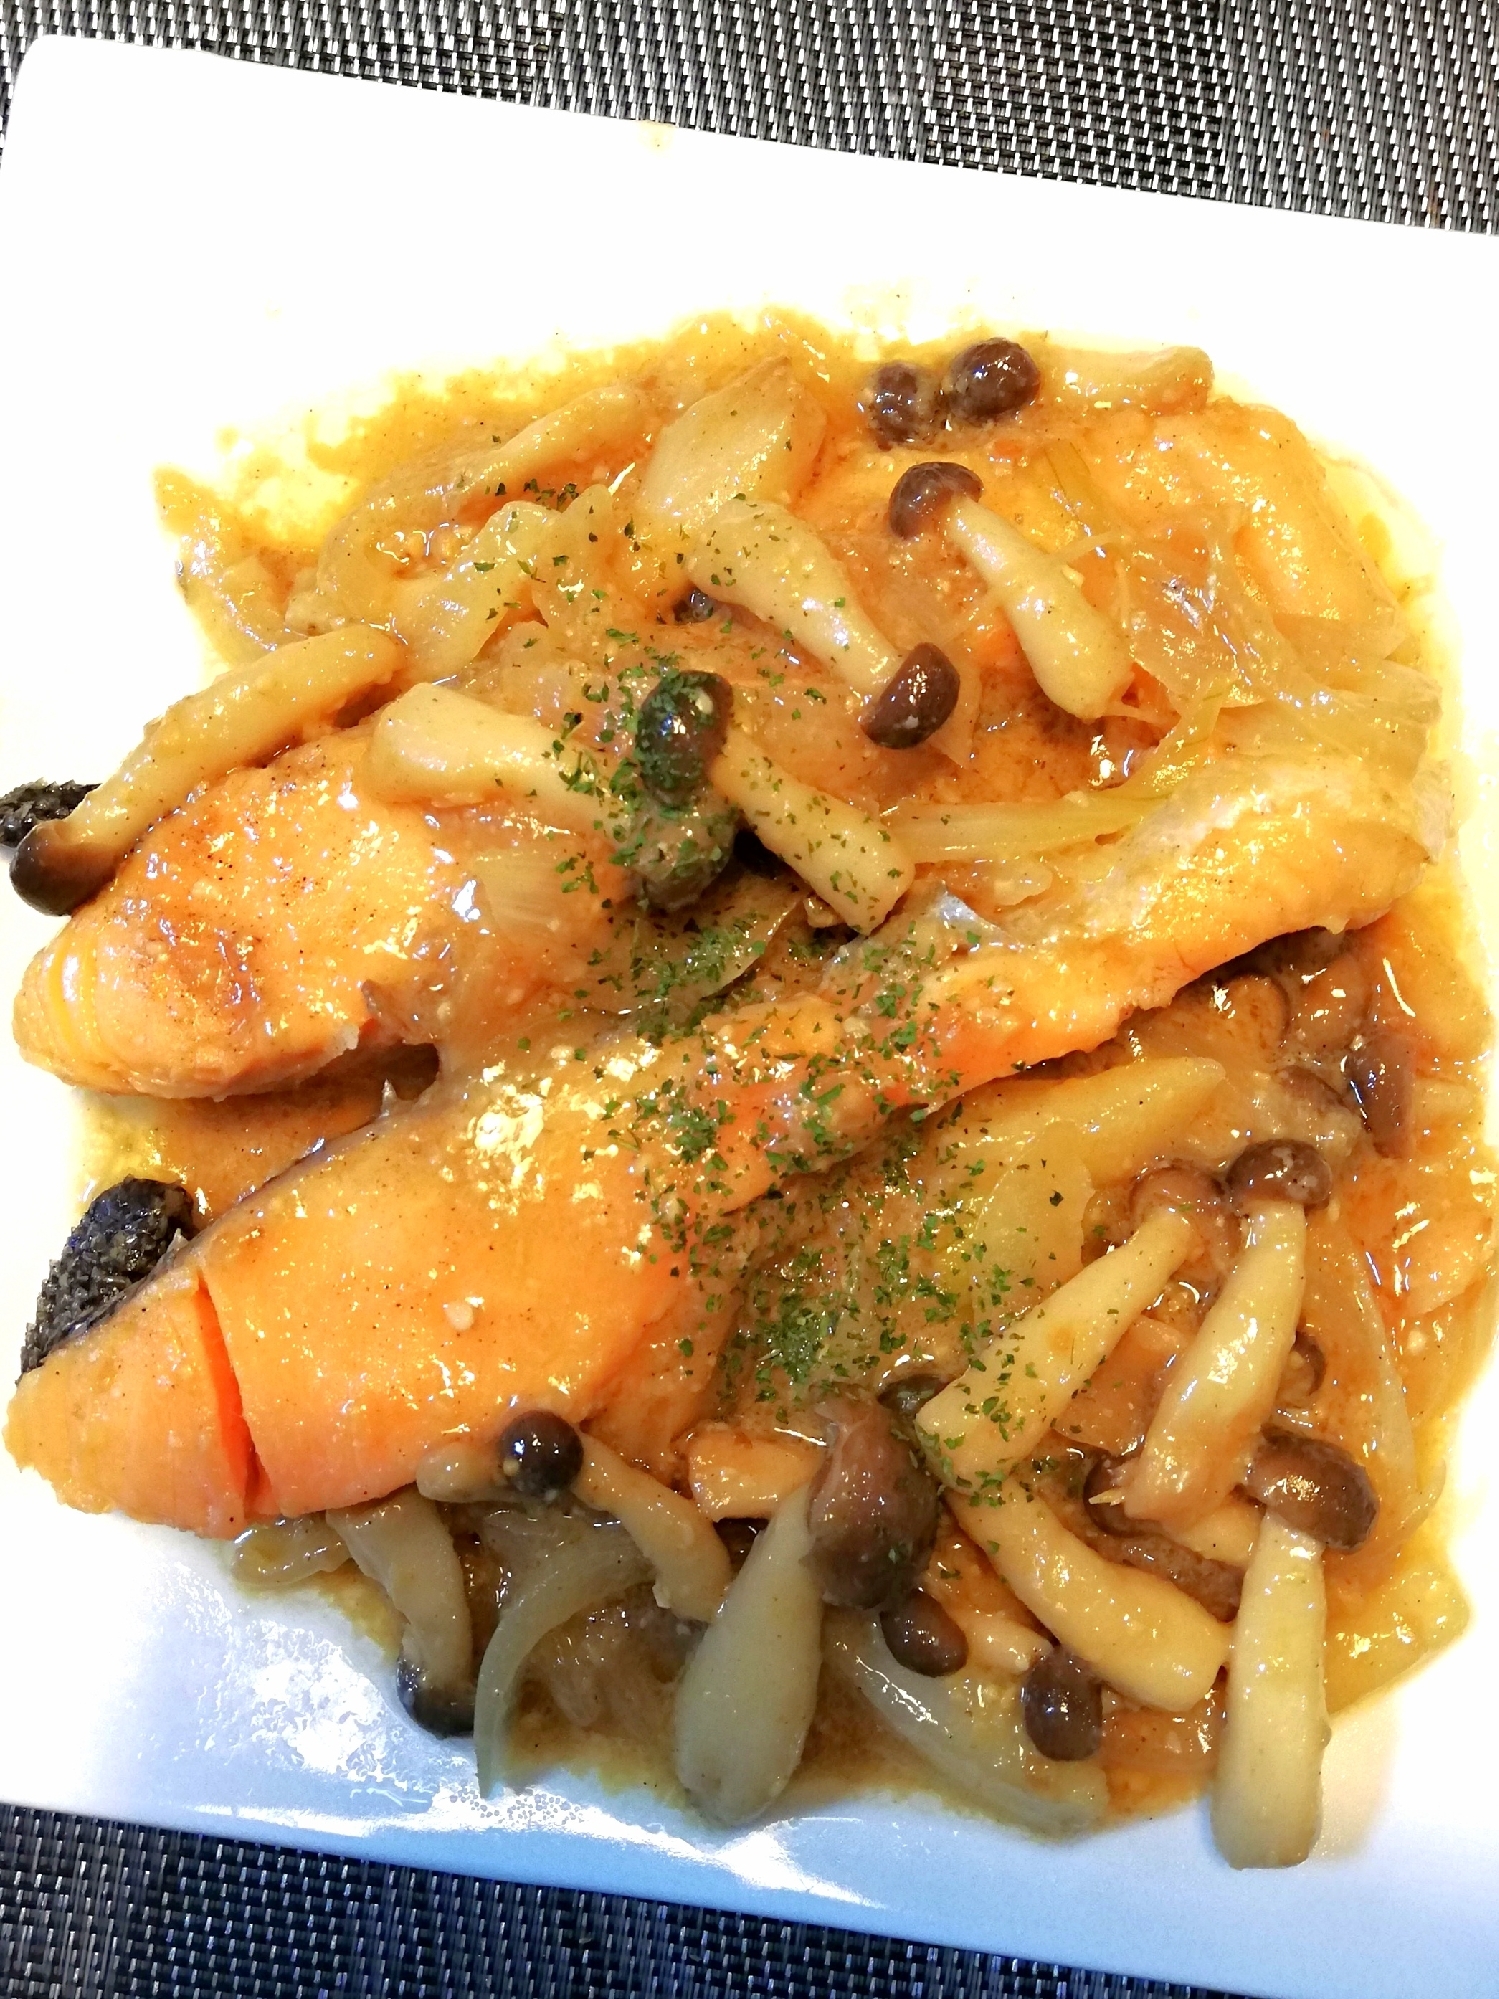 ワンパン♪秋鮭とキノコの味噌マヨソース